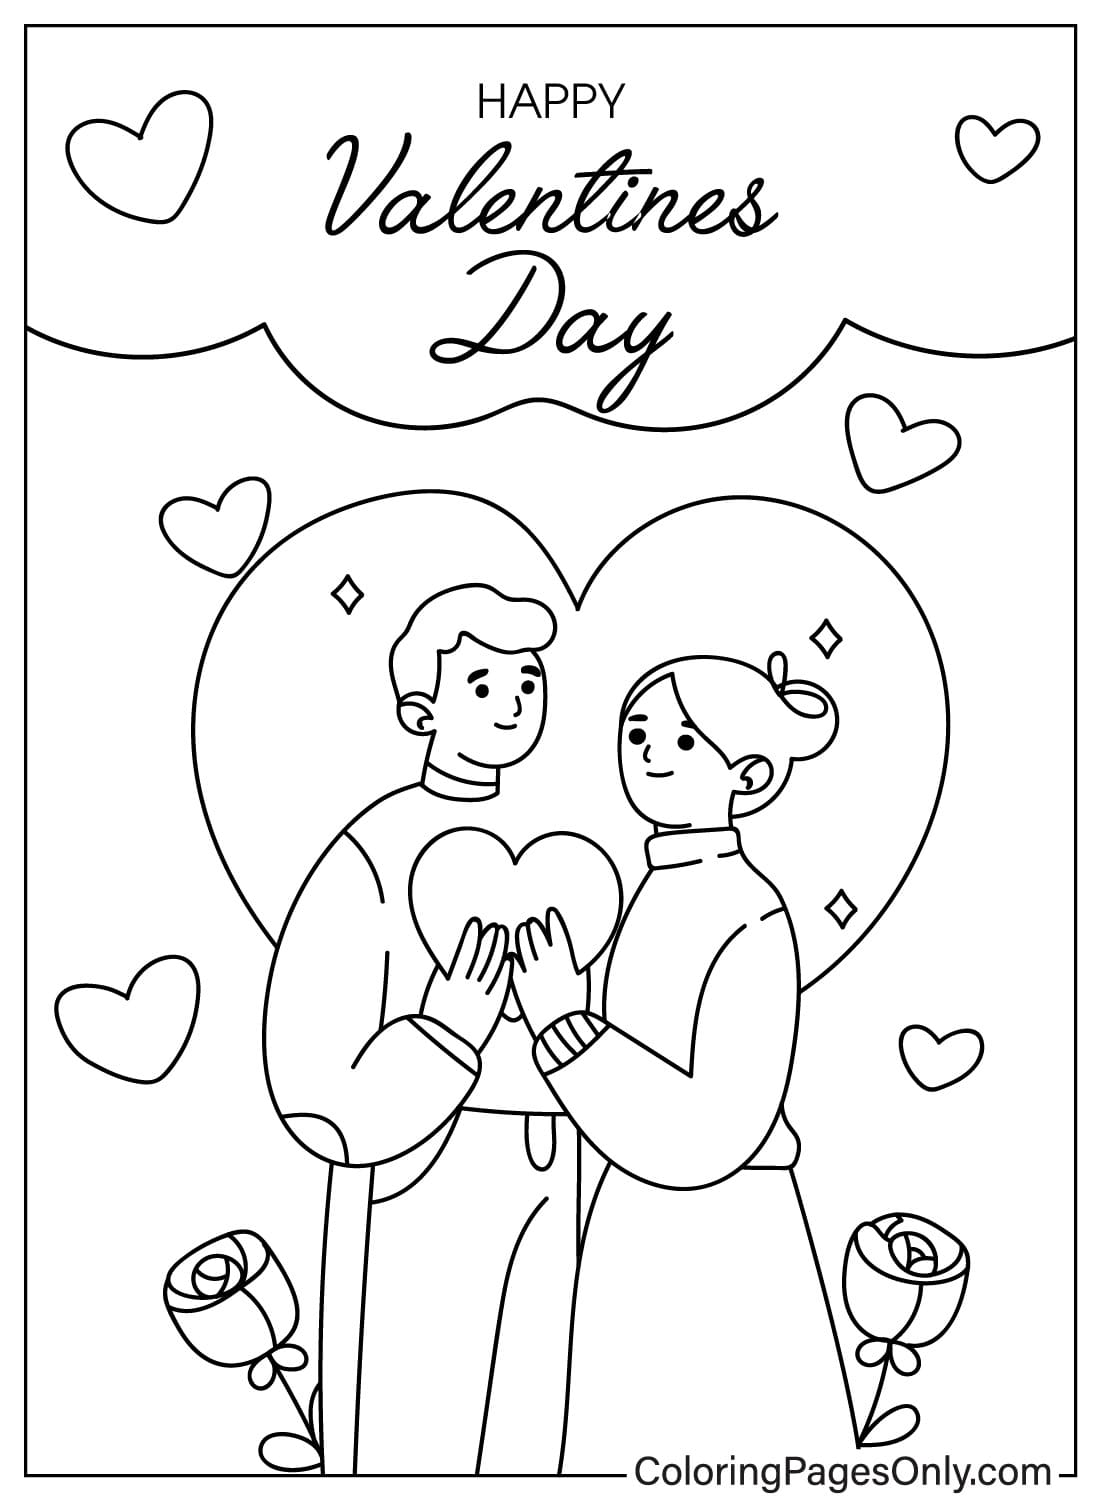 Рисунок раскраски ко Дню святого Валентина из открыток ко Дню святого Валентина